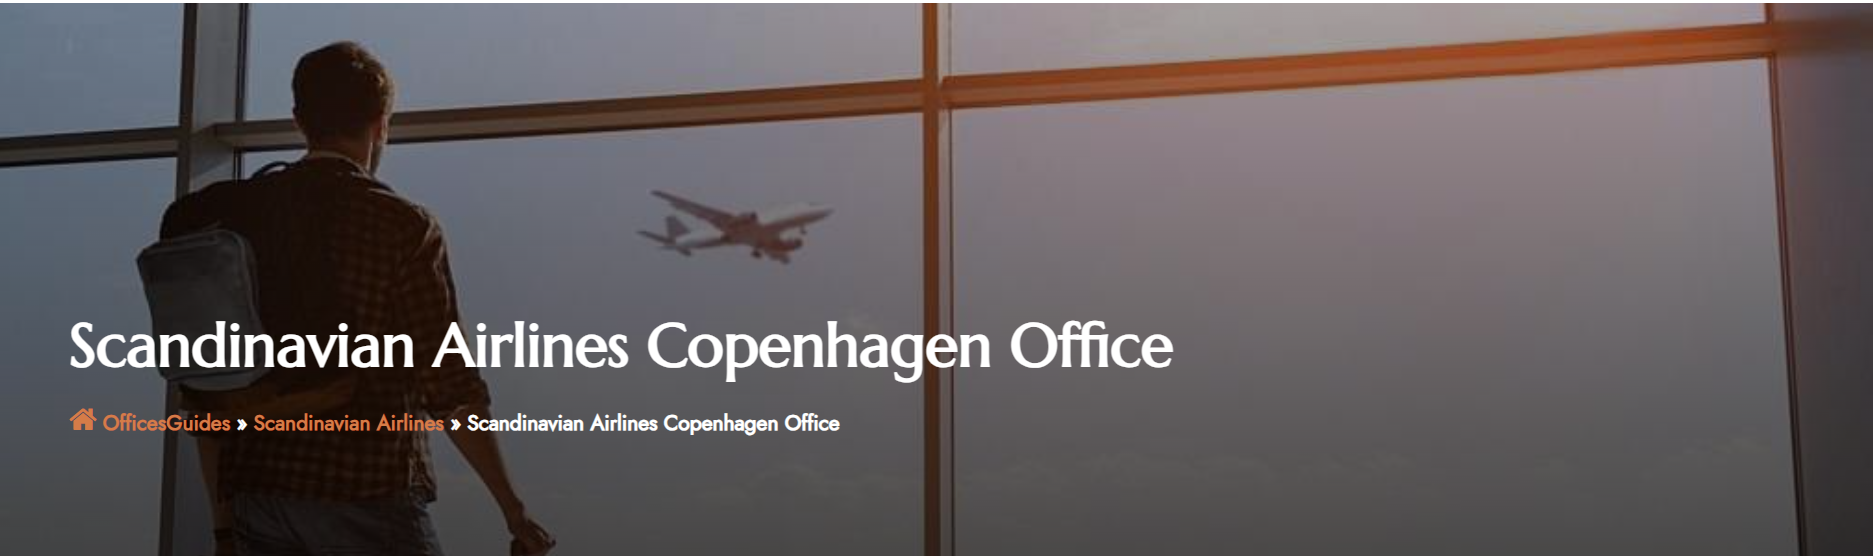 Scandinavian Airlines Copenhagen Office.